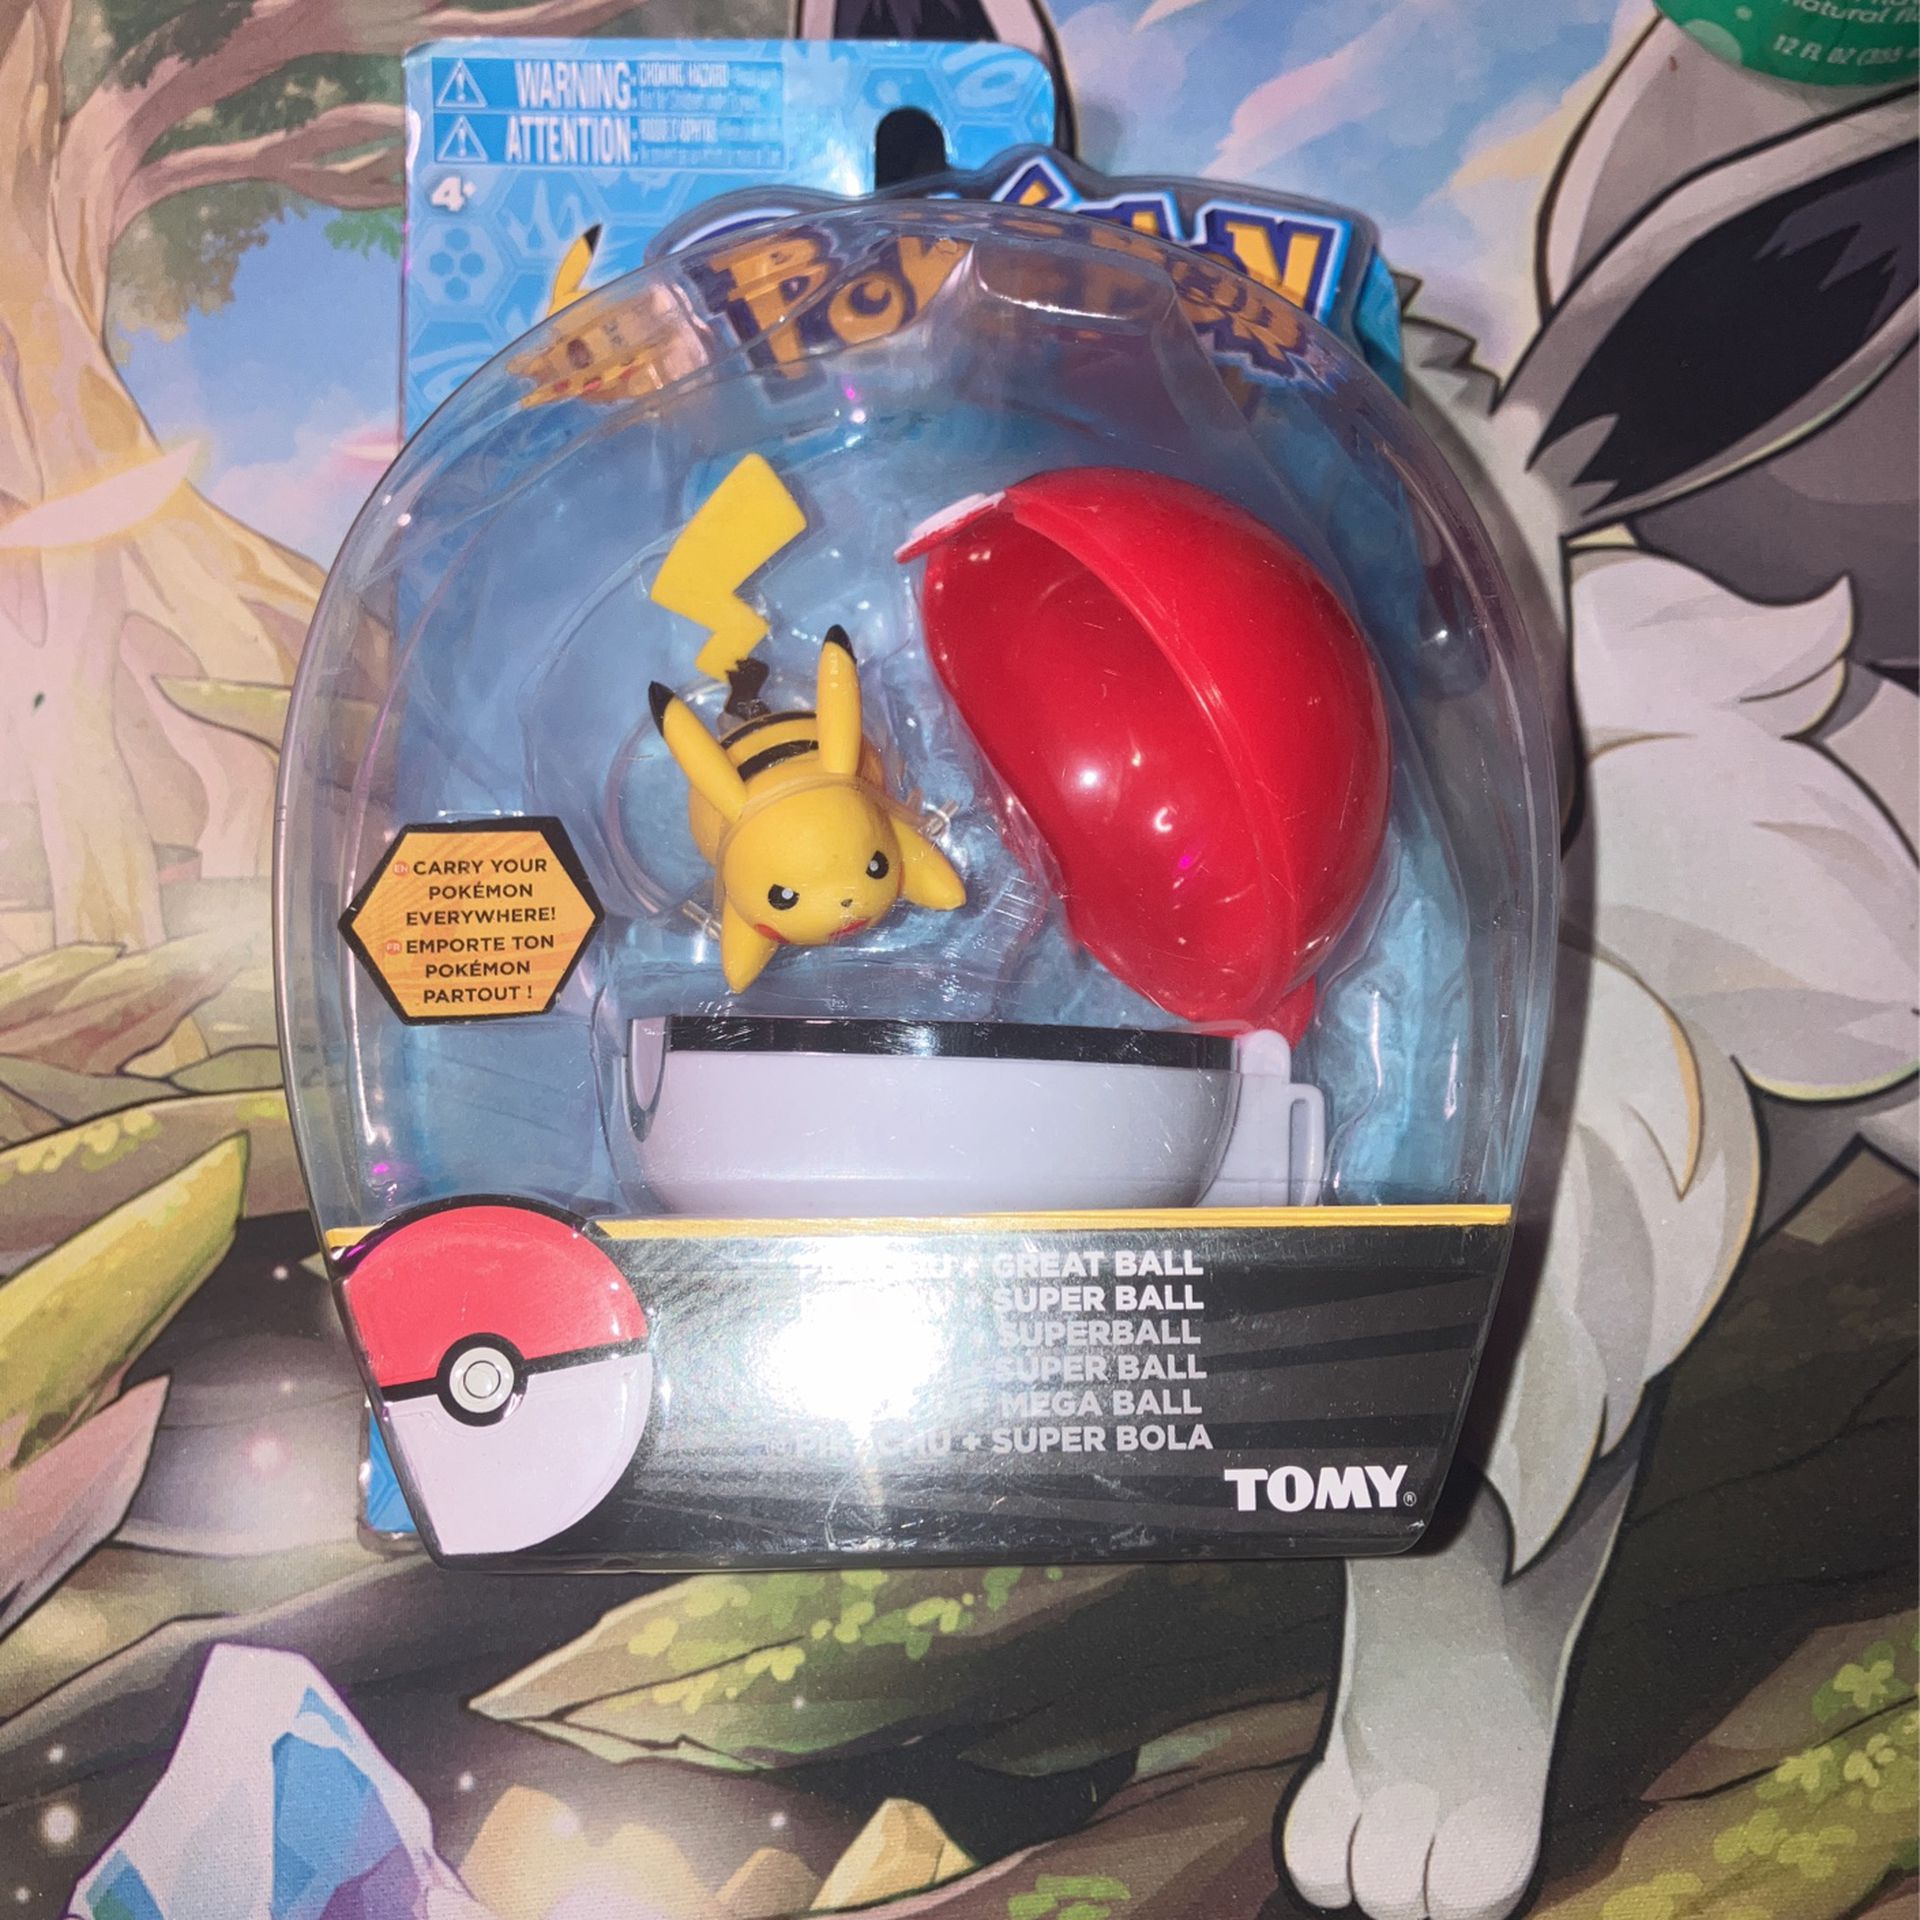 Pikachu “Wild Charge Stance” & Pokéball Combo Pokemon Battle Figure Combo